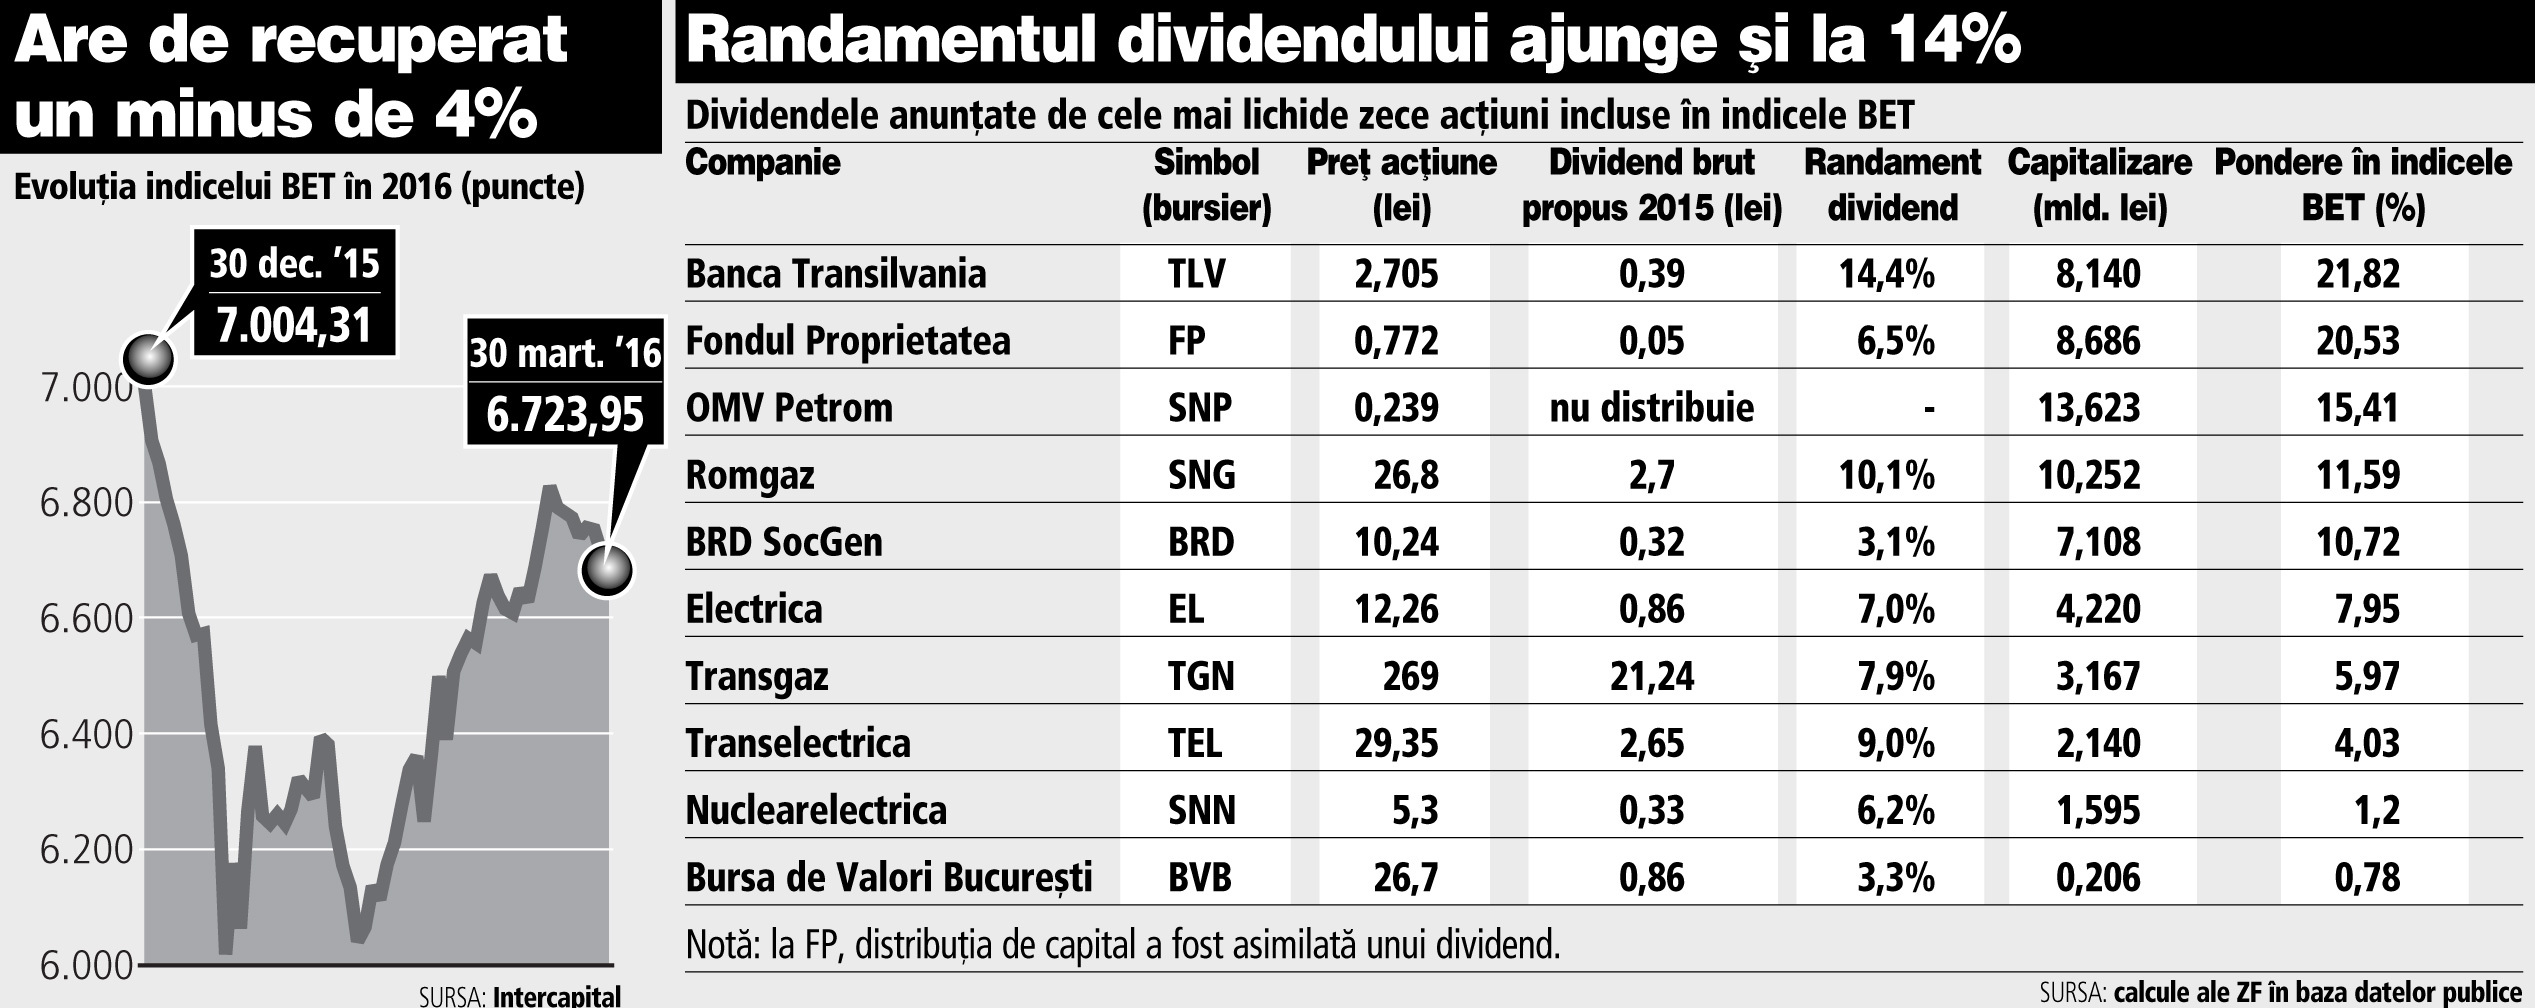 Aristocraţii dividendelor: Banca Transilvania, Transelectrica şi Romgaz aduc randamente şi de şapte ori dobânda la depozit